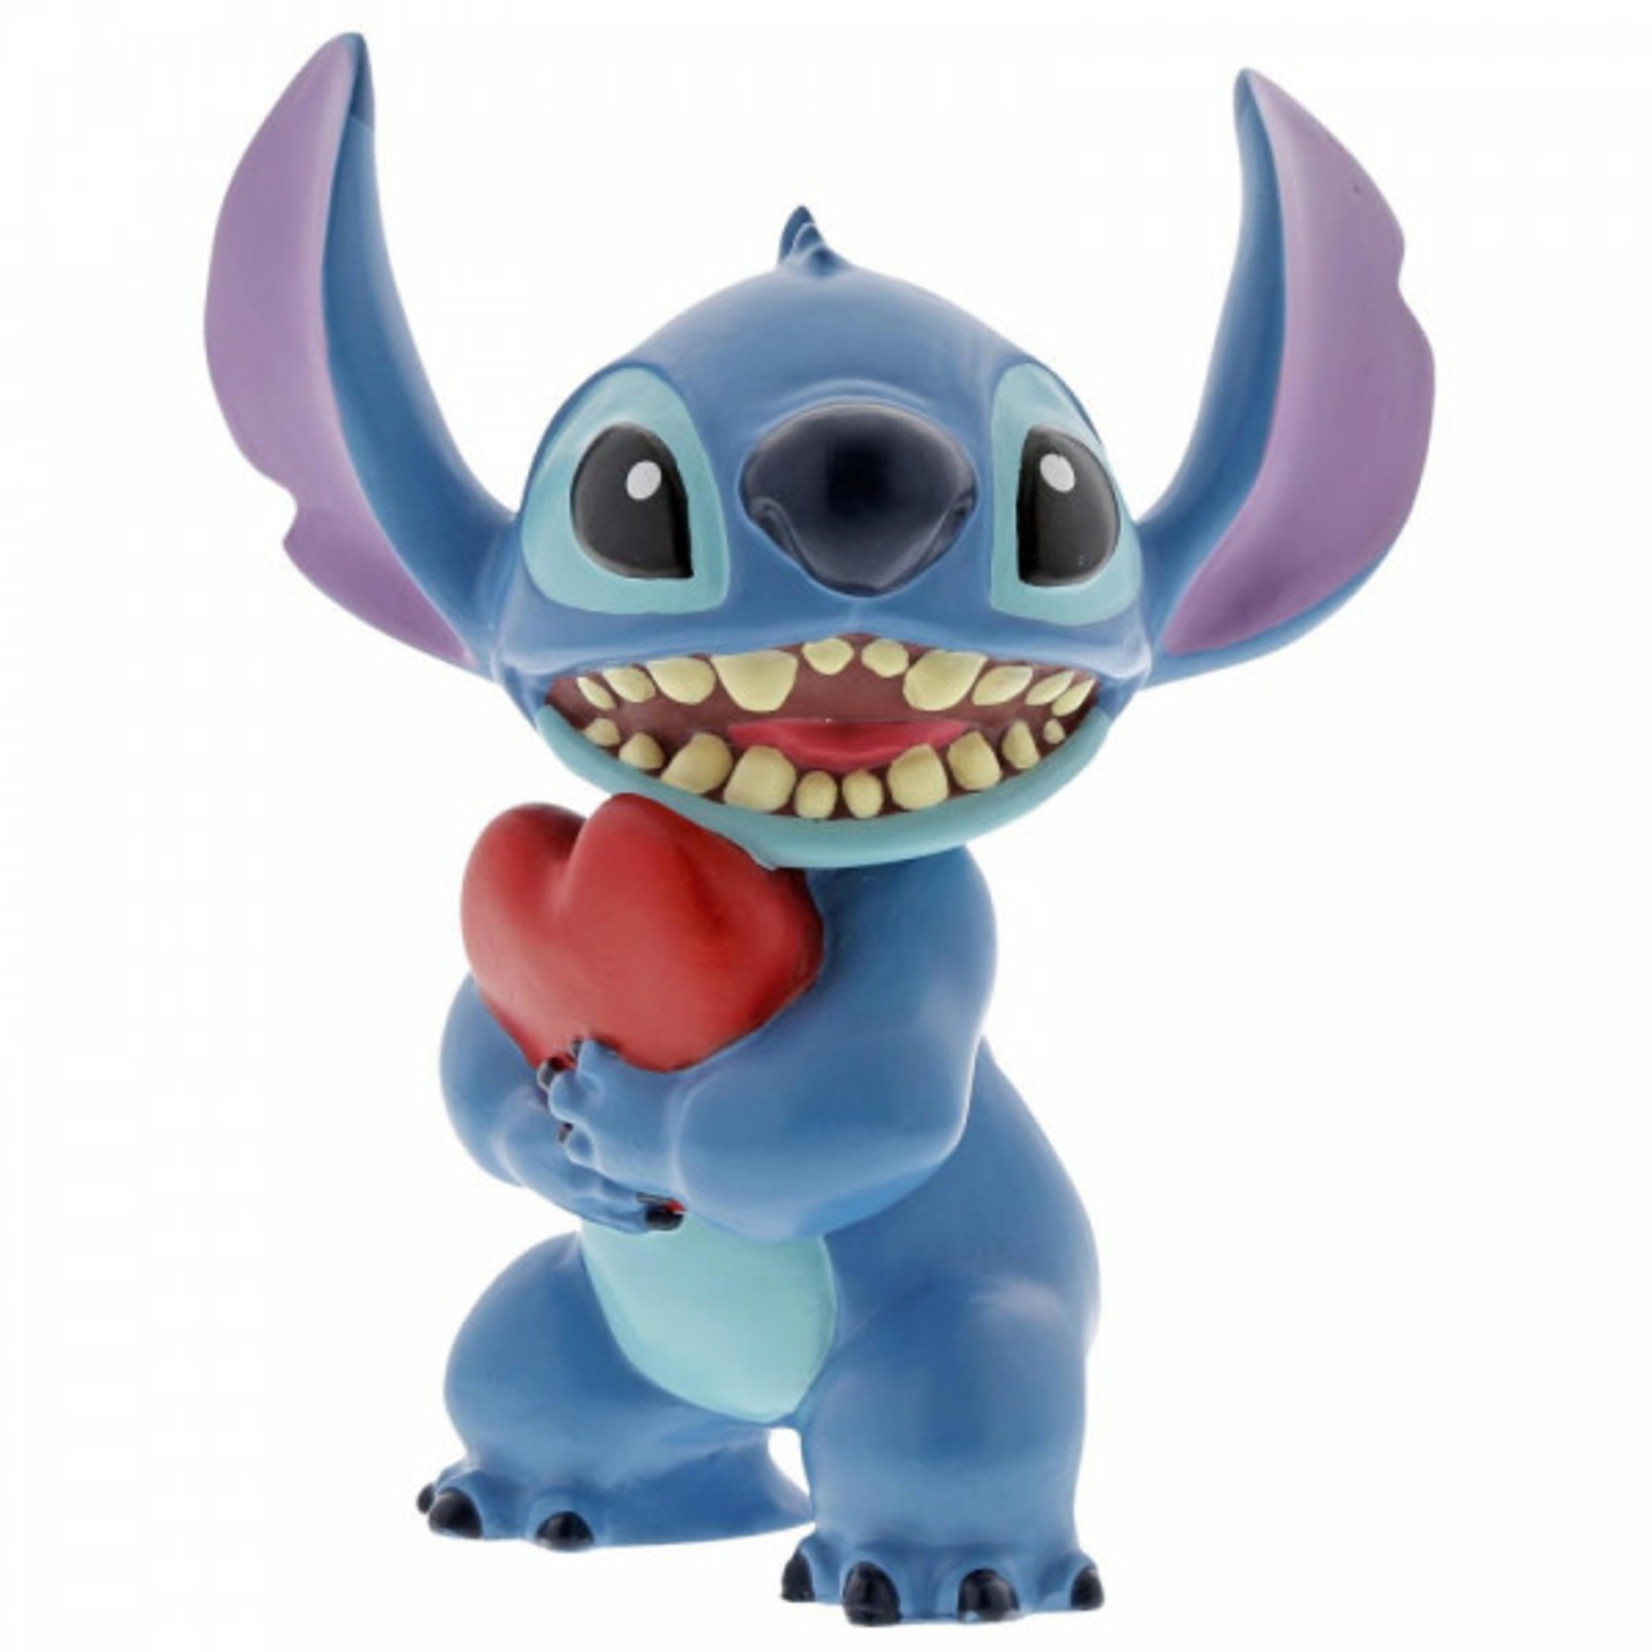 Disney Disney - Stitch with Heart - 6002185